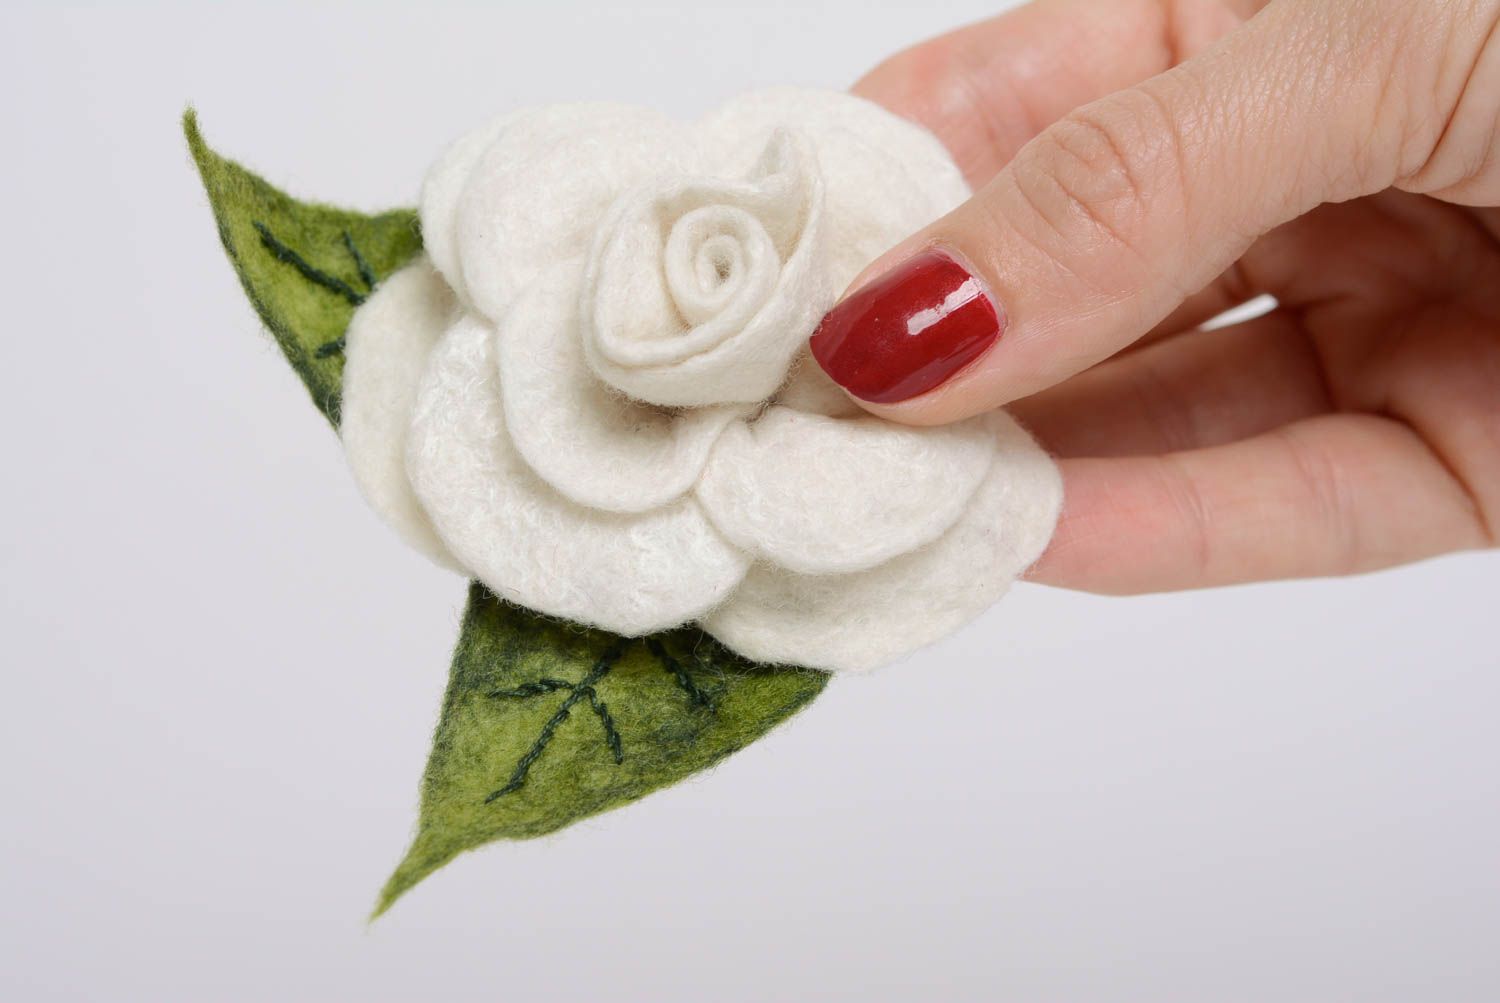 Textil Brosche Haarspange Blume in Walken Technik künstlerische Handarbeit  foto 4